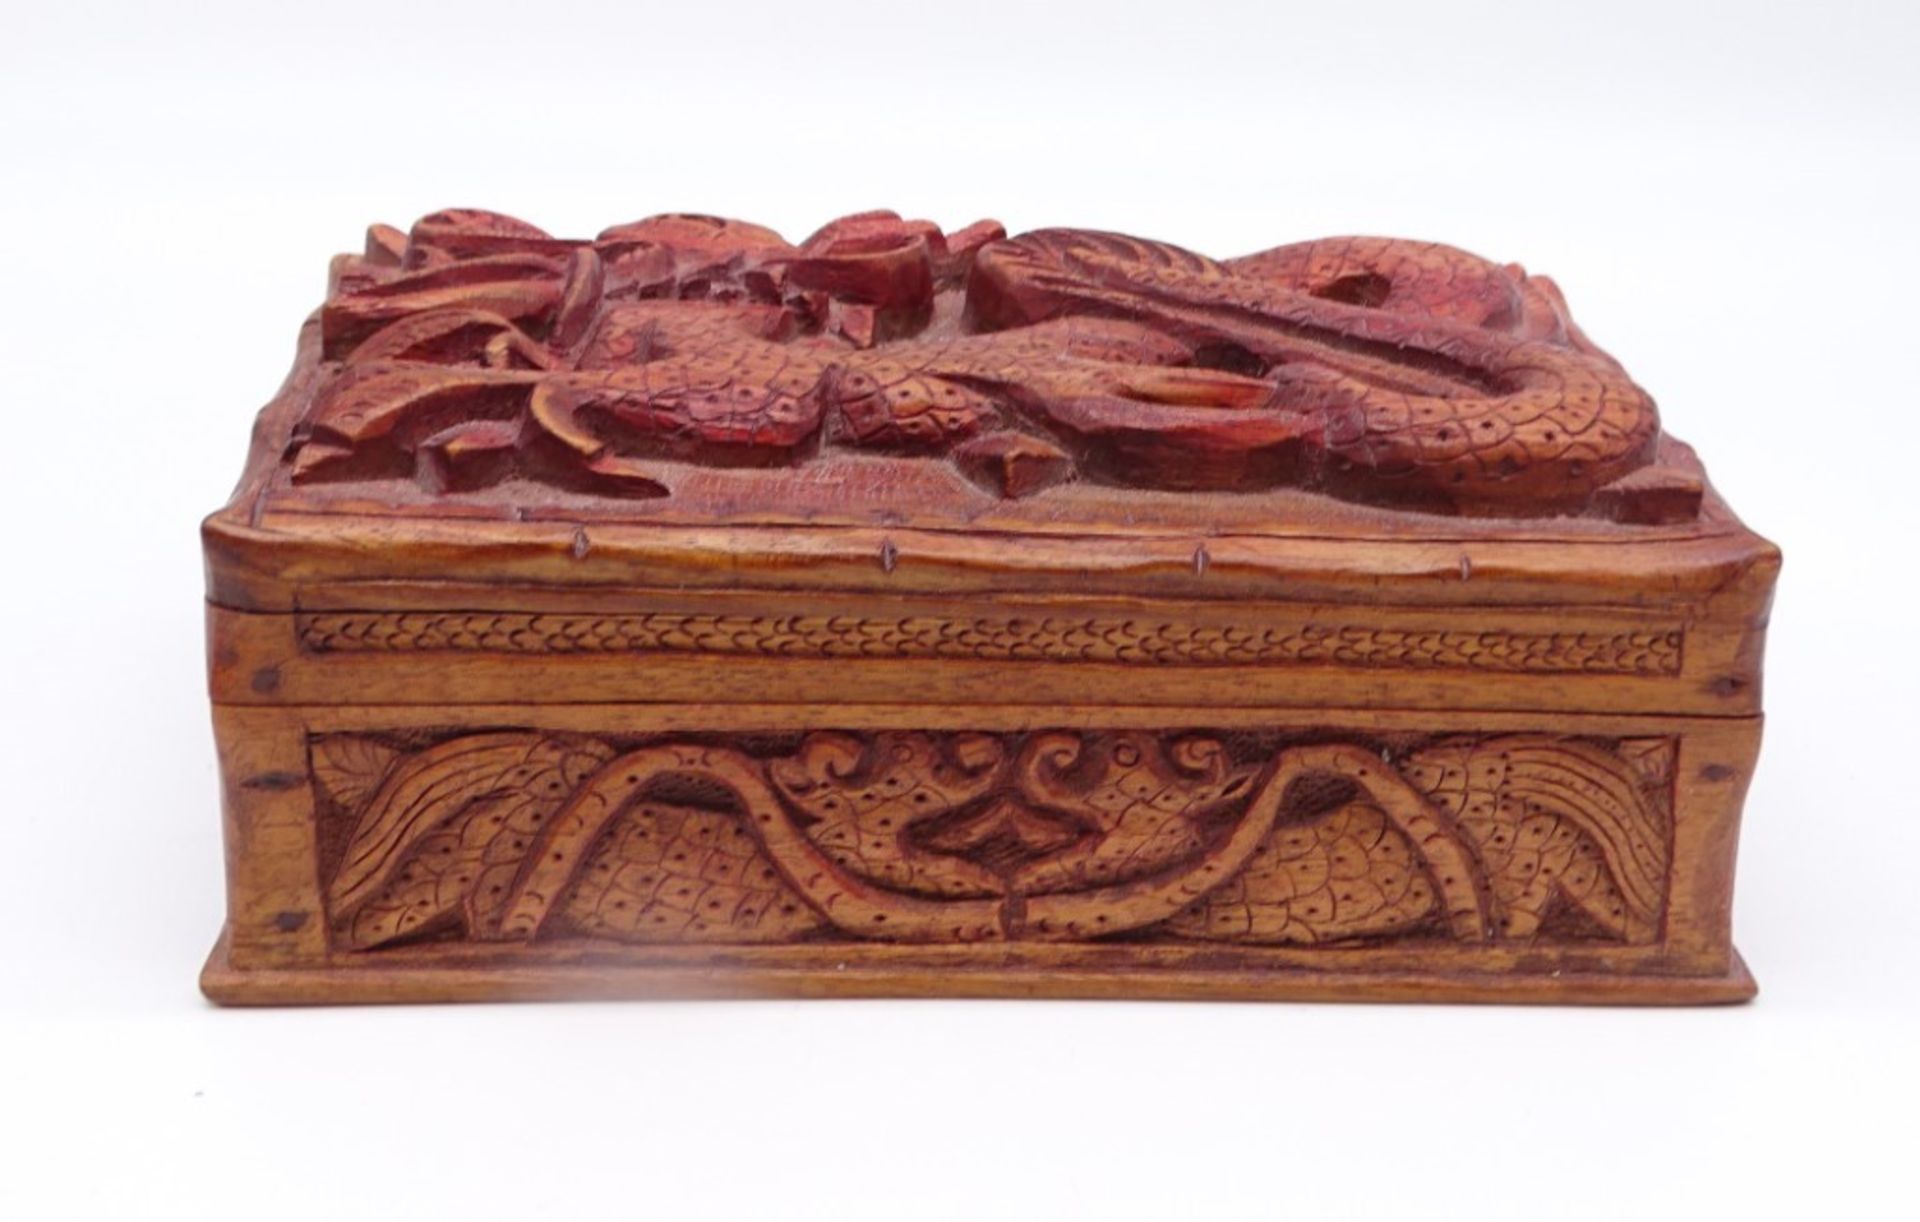 Holzkästchen mit reliefierter Drachenfigur, Asien, 20 x 12,5 x 8 cm, leicht reinigungsbedürftig - Bild 2 aus 4